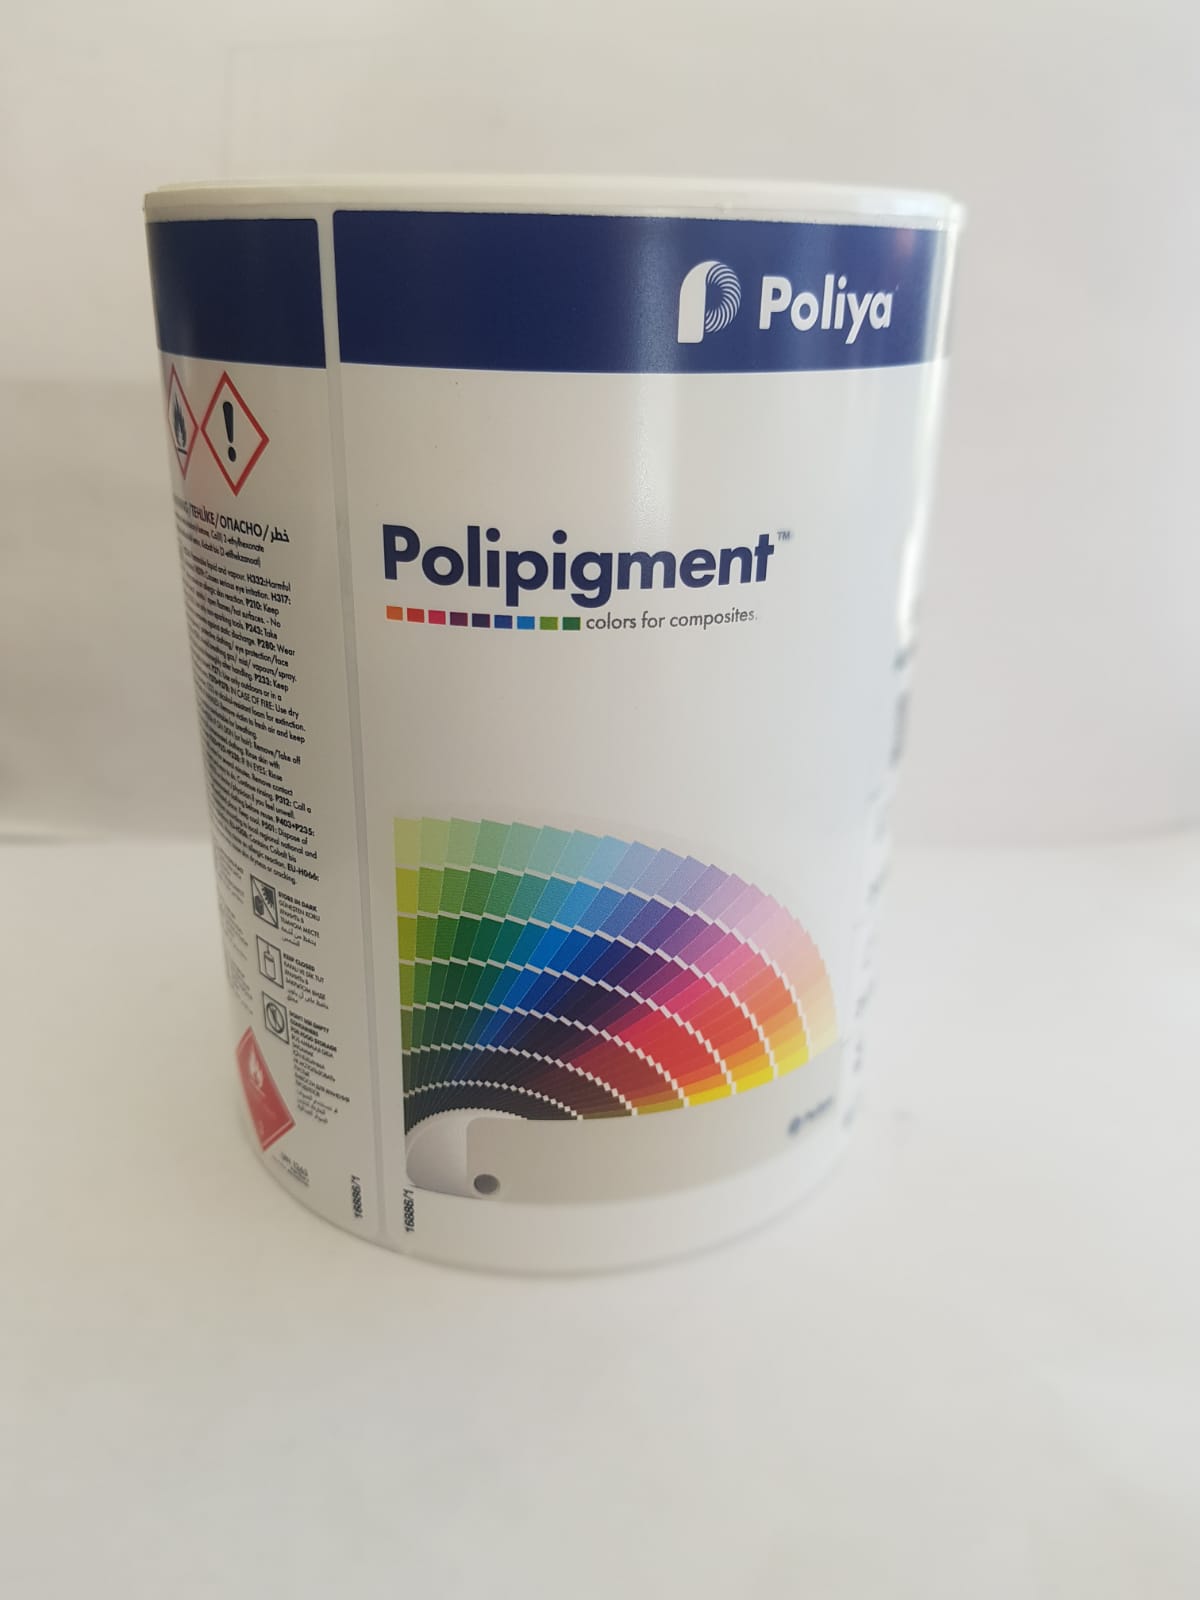 Poliya Pigment